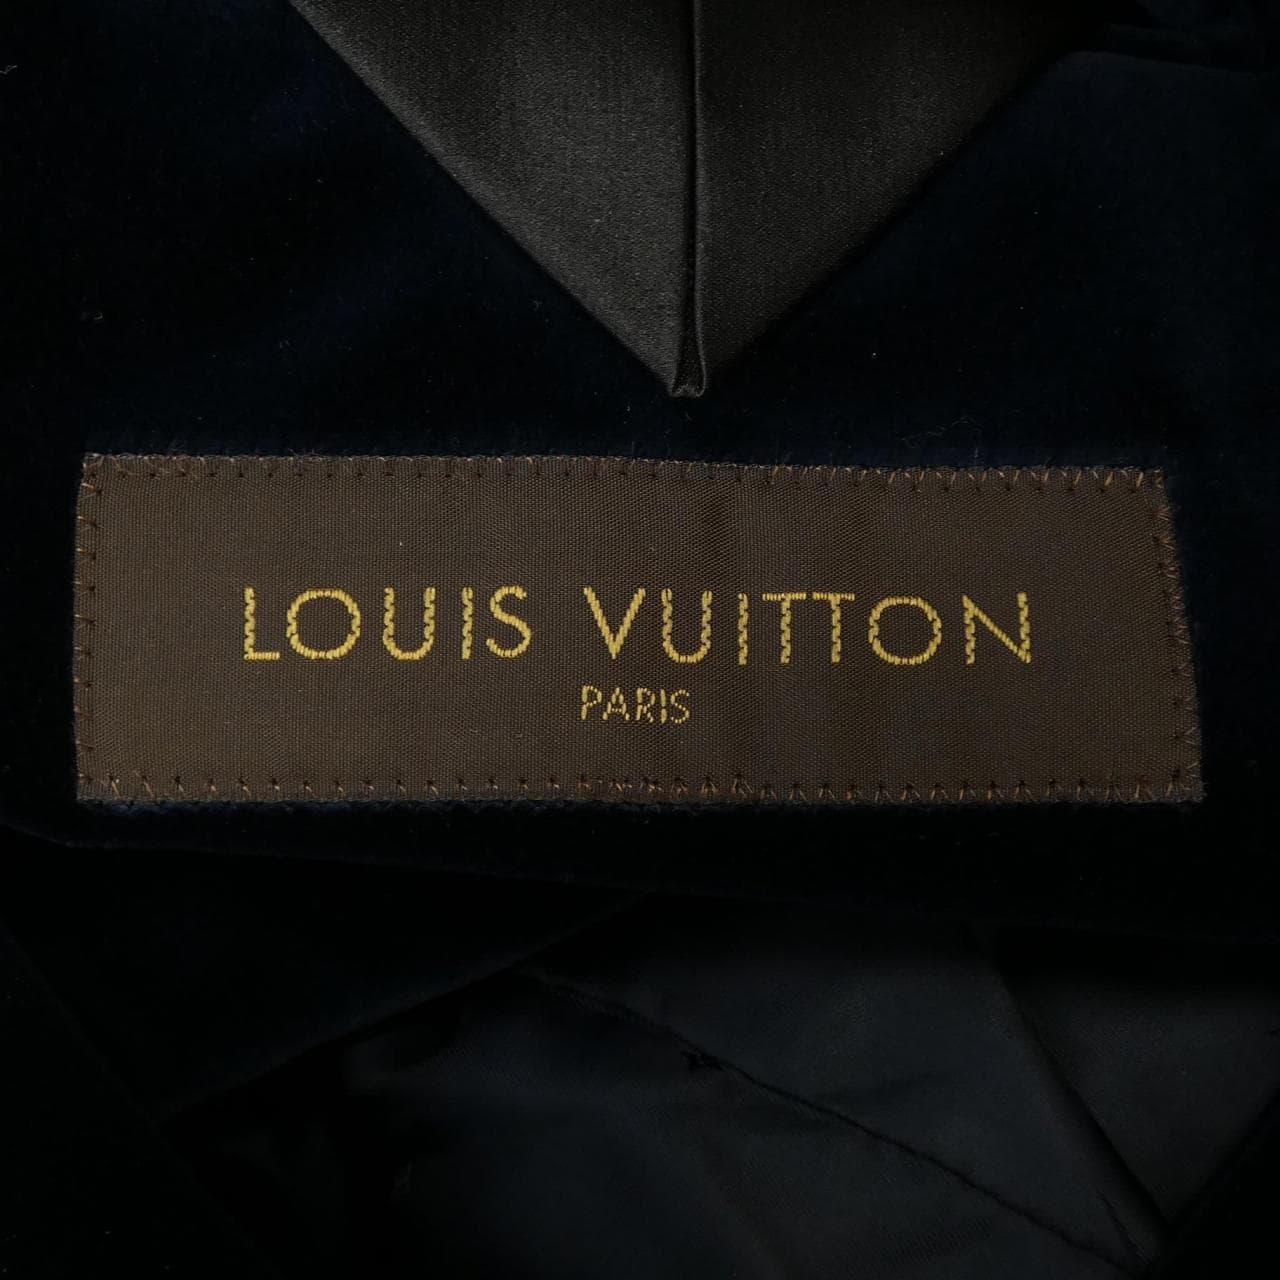 LOUIS VUITTON夾克